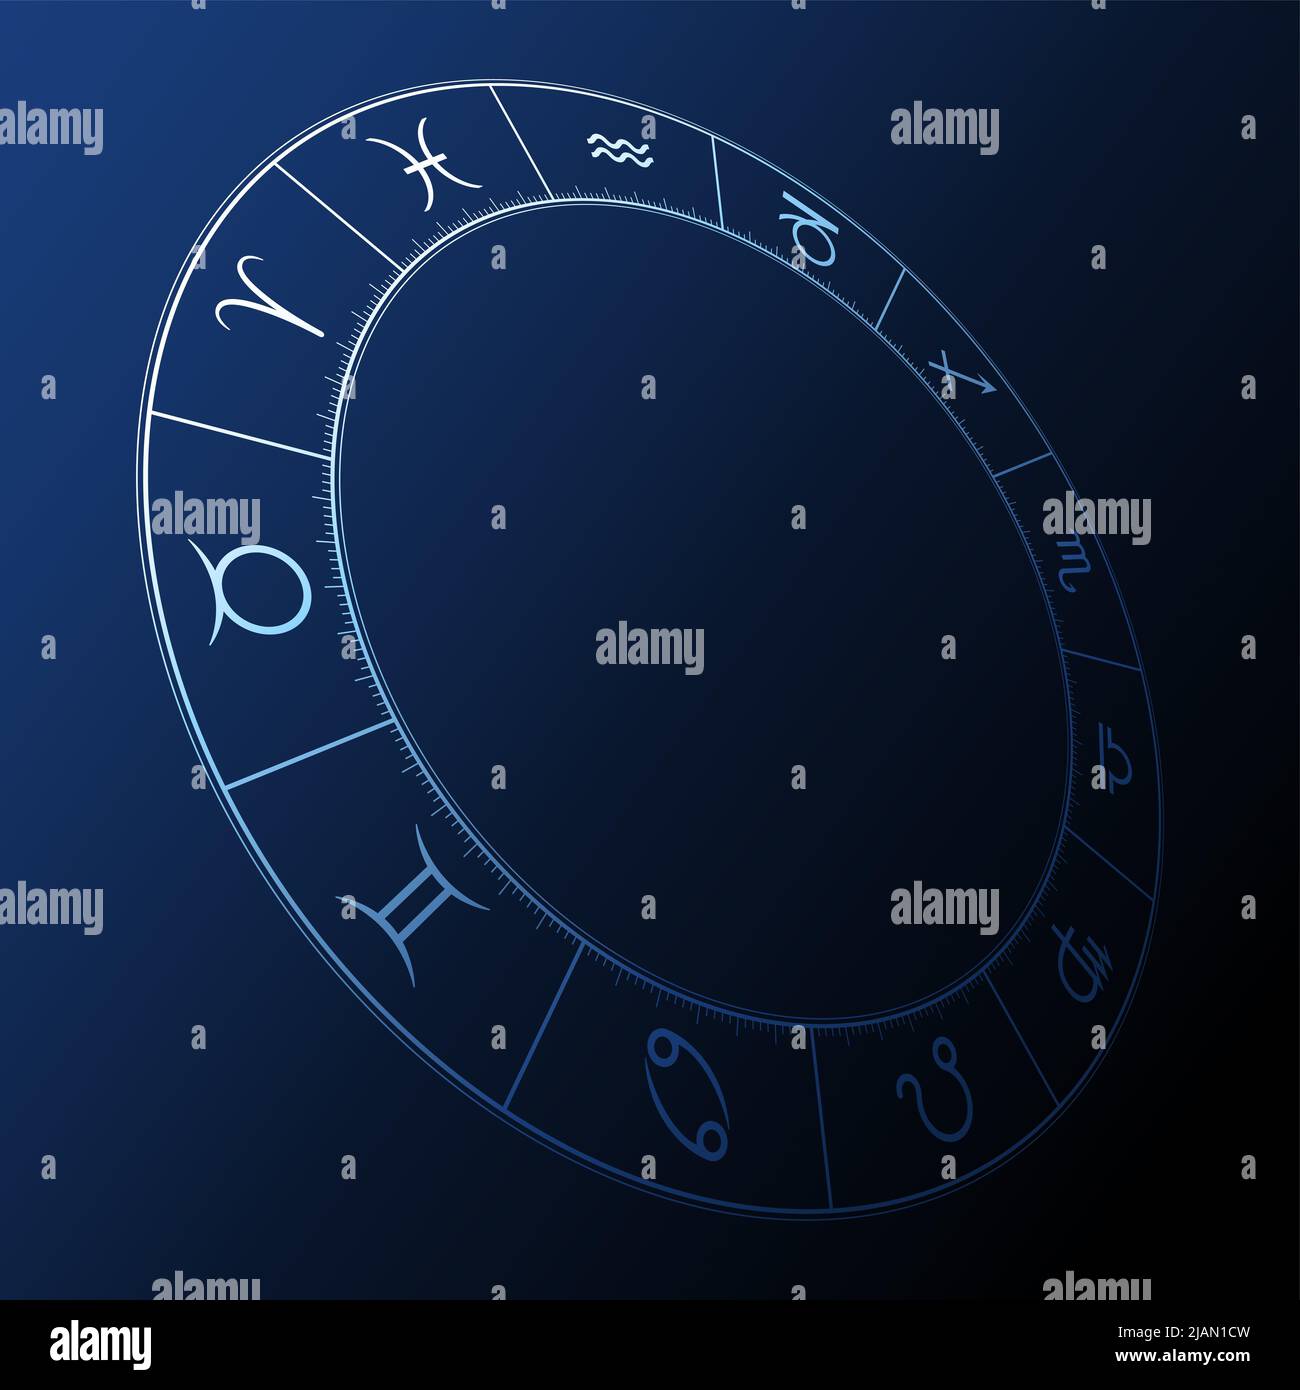 Sternkreis auf dunkelblauem Hintergrund. Dreidimensionales astrologisches Diagramm, das die zwölf Sternzeichen-Symbole zeigt. Rad des Tierkreises. Stockfoto